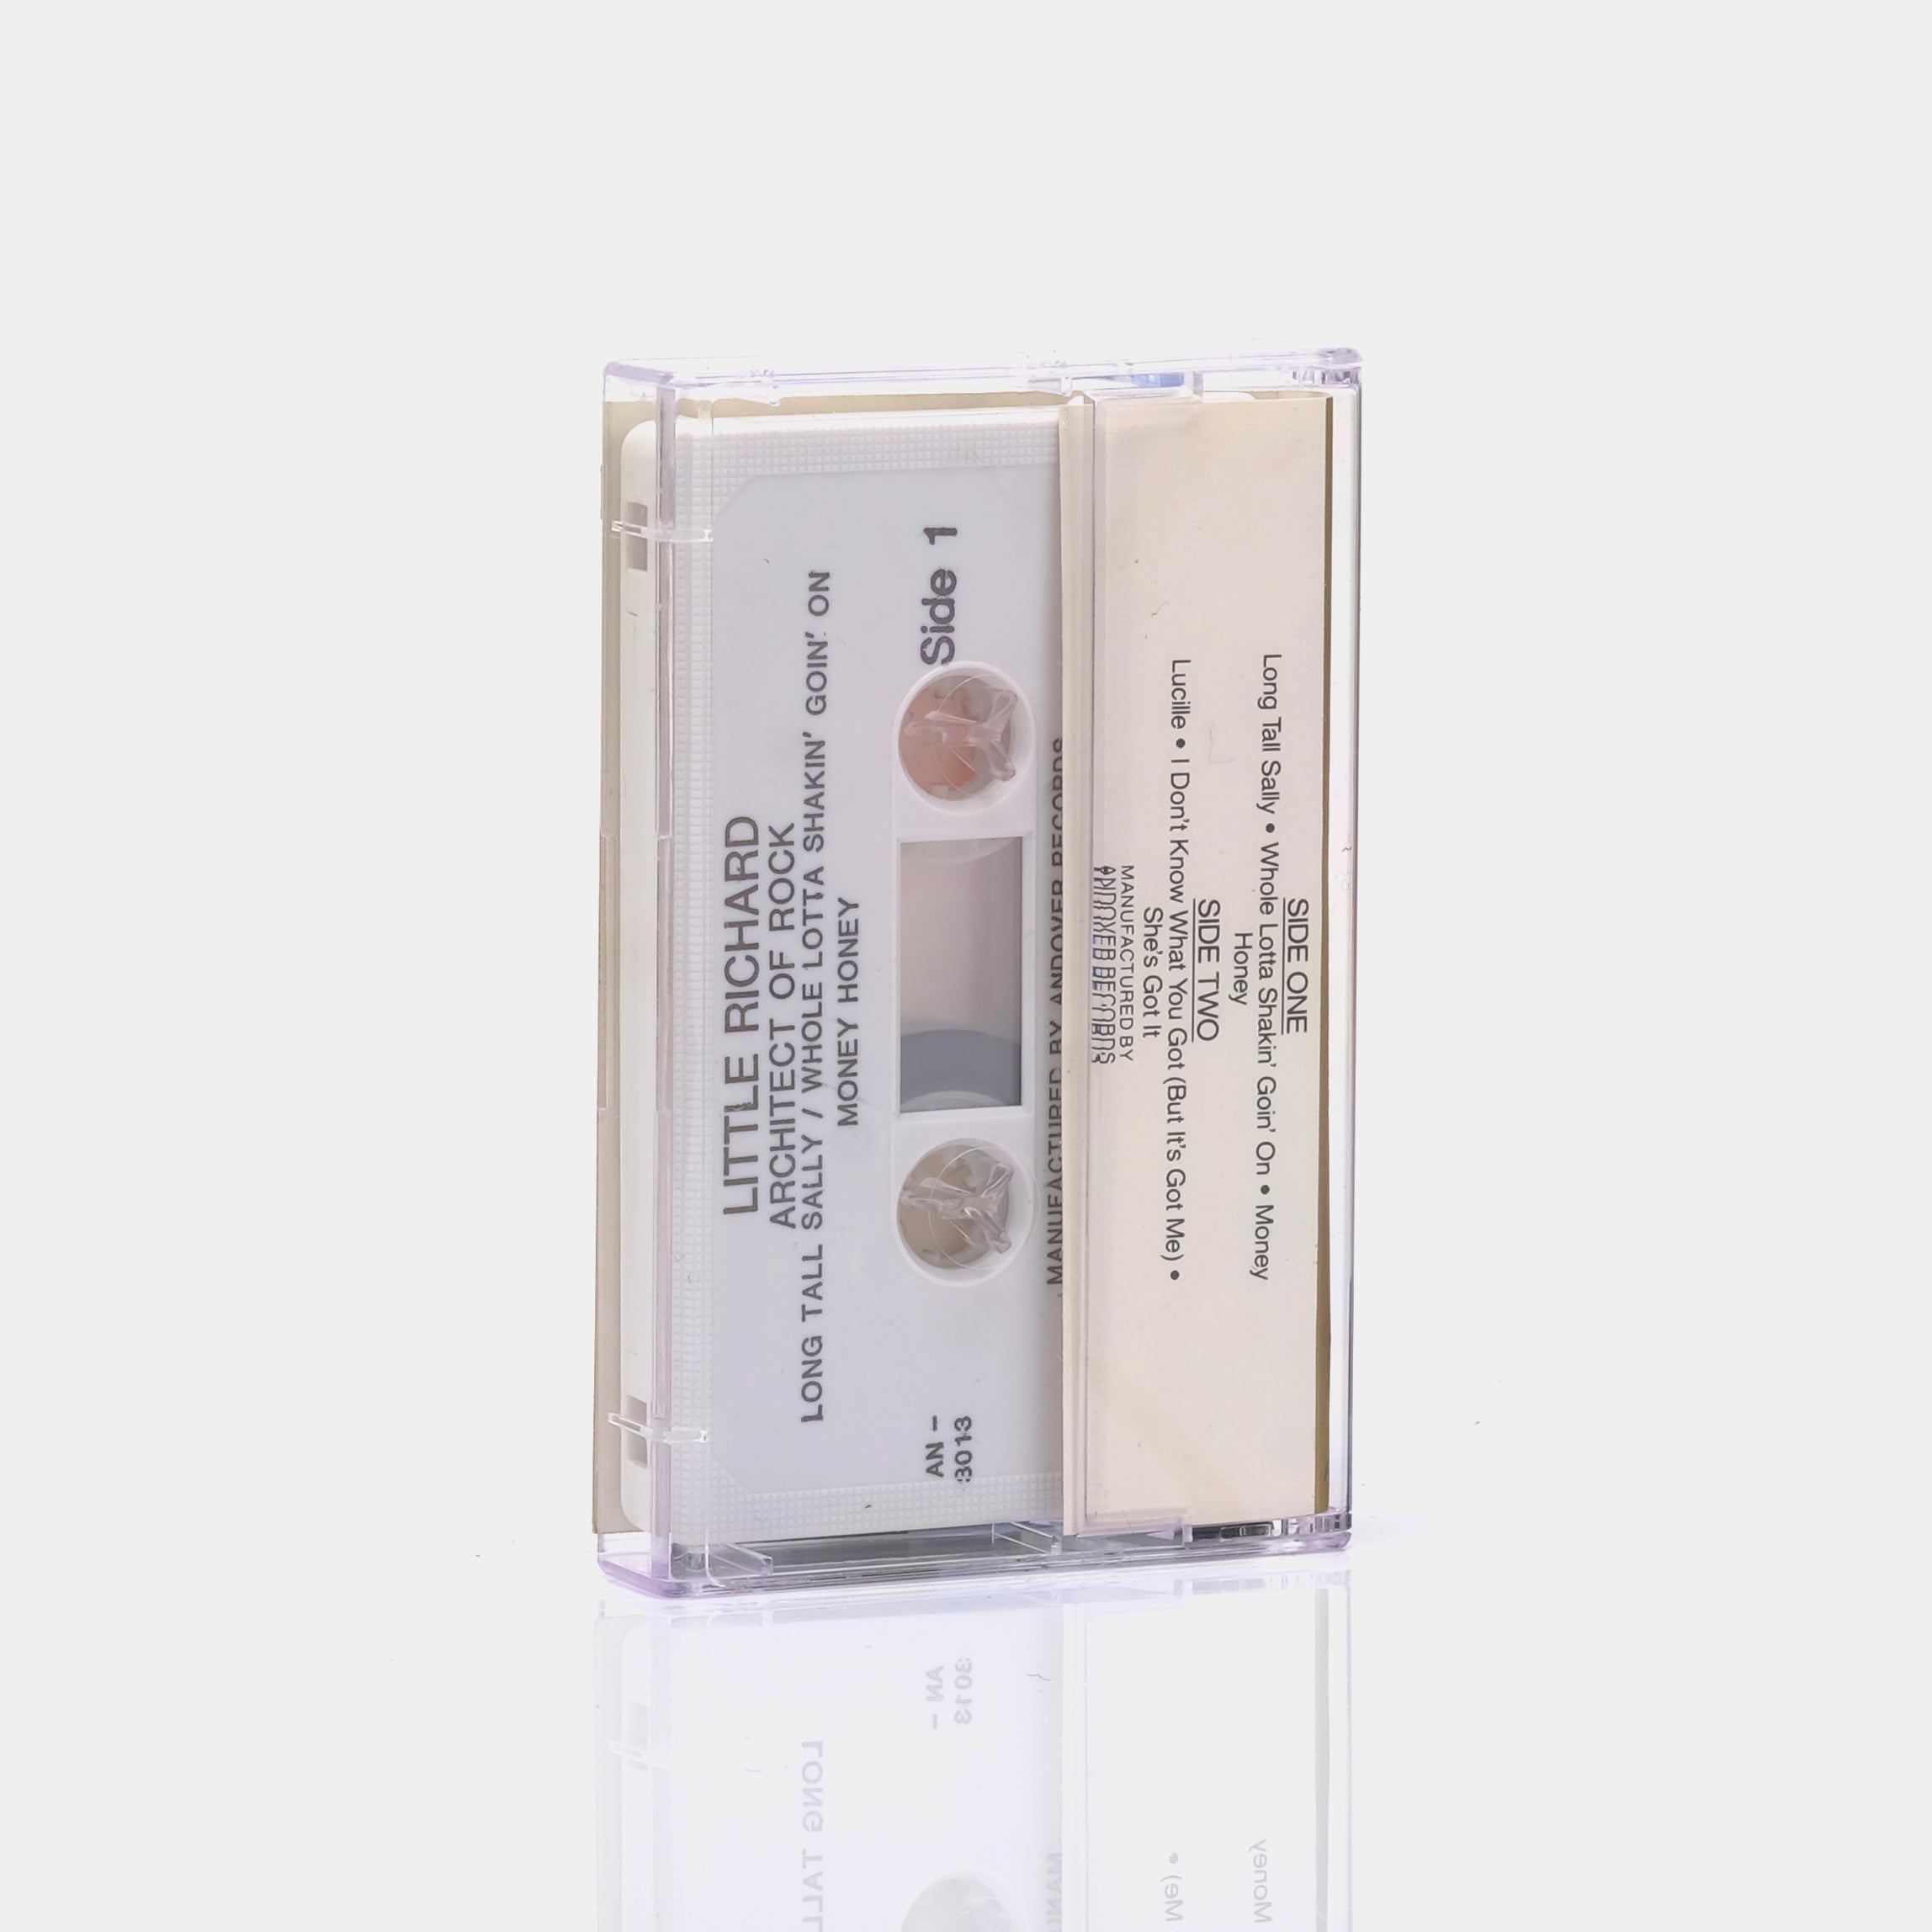 Little Richard - Architect Of Rock Cassette Tape